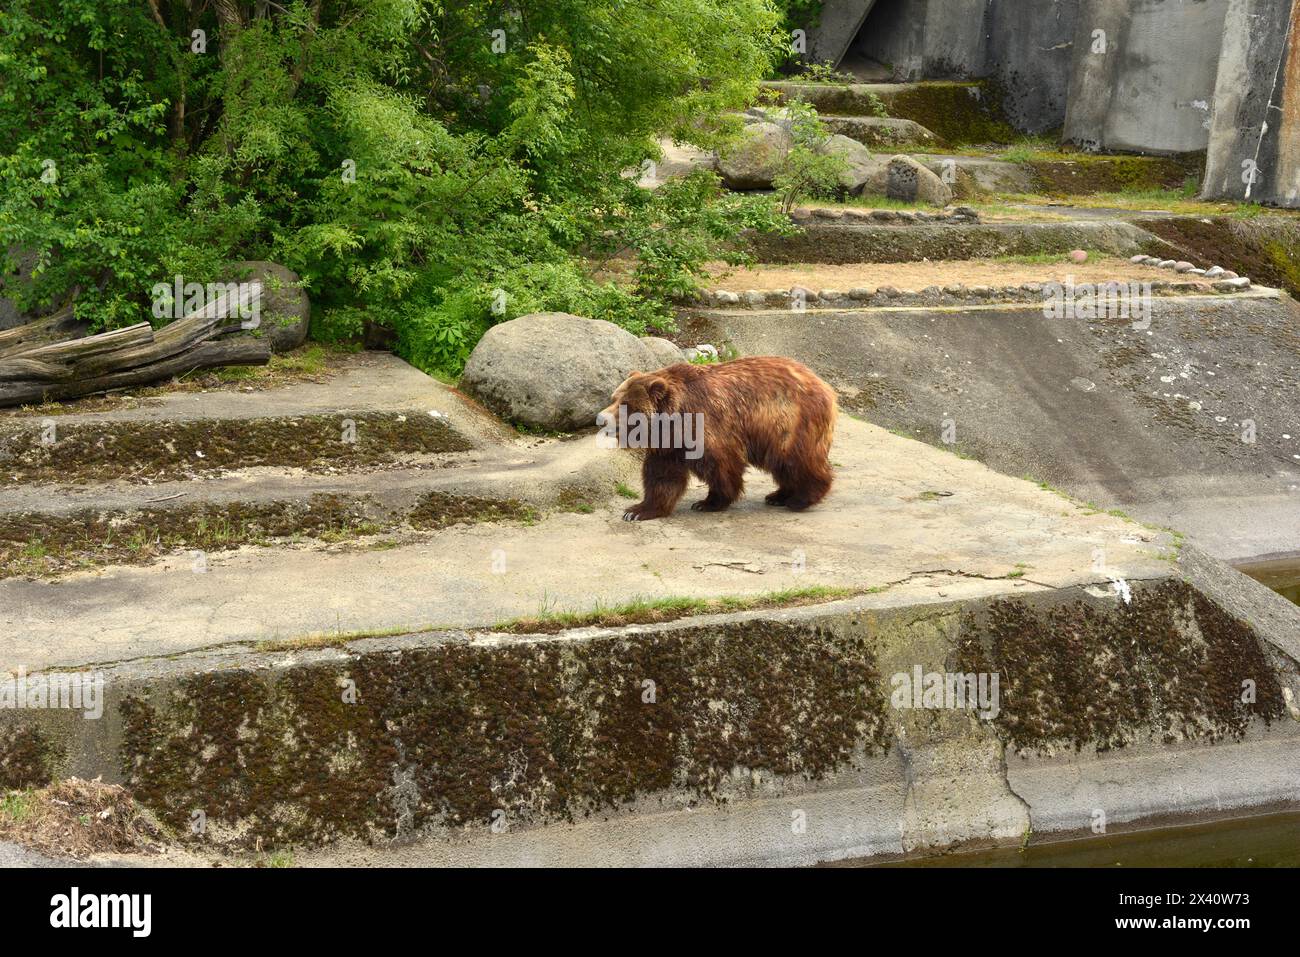 Ours grizzli Ursus arctos horribilis ou ours brun d'Amérique du Nord en captivité au zoo de Sofia, Sofia Bulgarie, Europe de l'est, Balkans, UE Banque D'Images